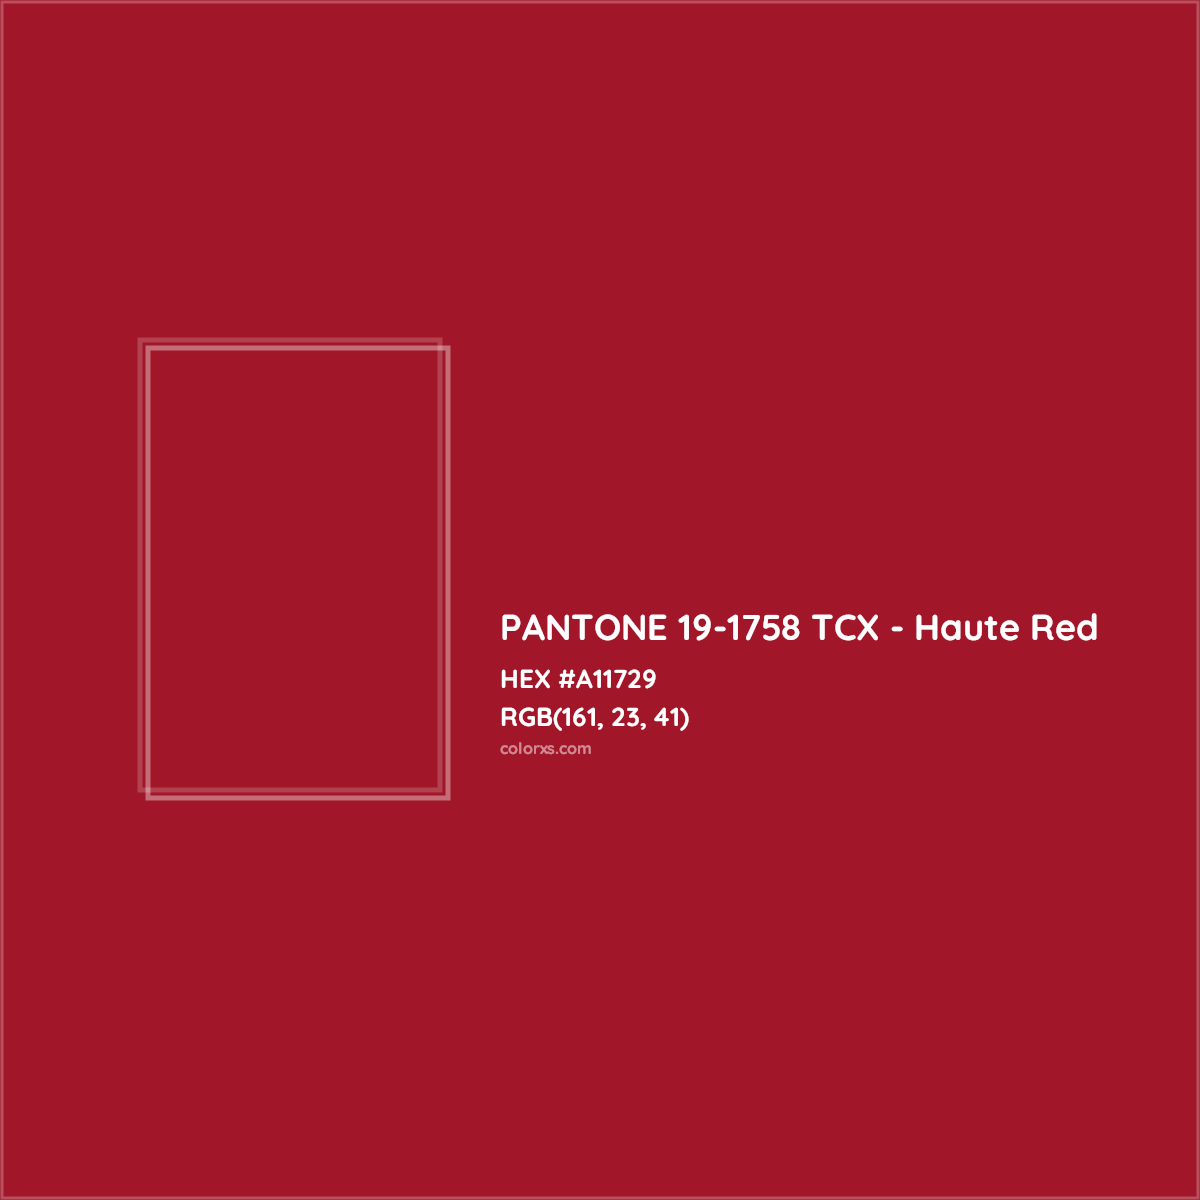 HEX #A11729 PANTONE 19-1758 TCX - Haute Red CMS Pantone TCX - Color Code